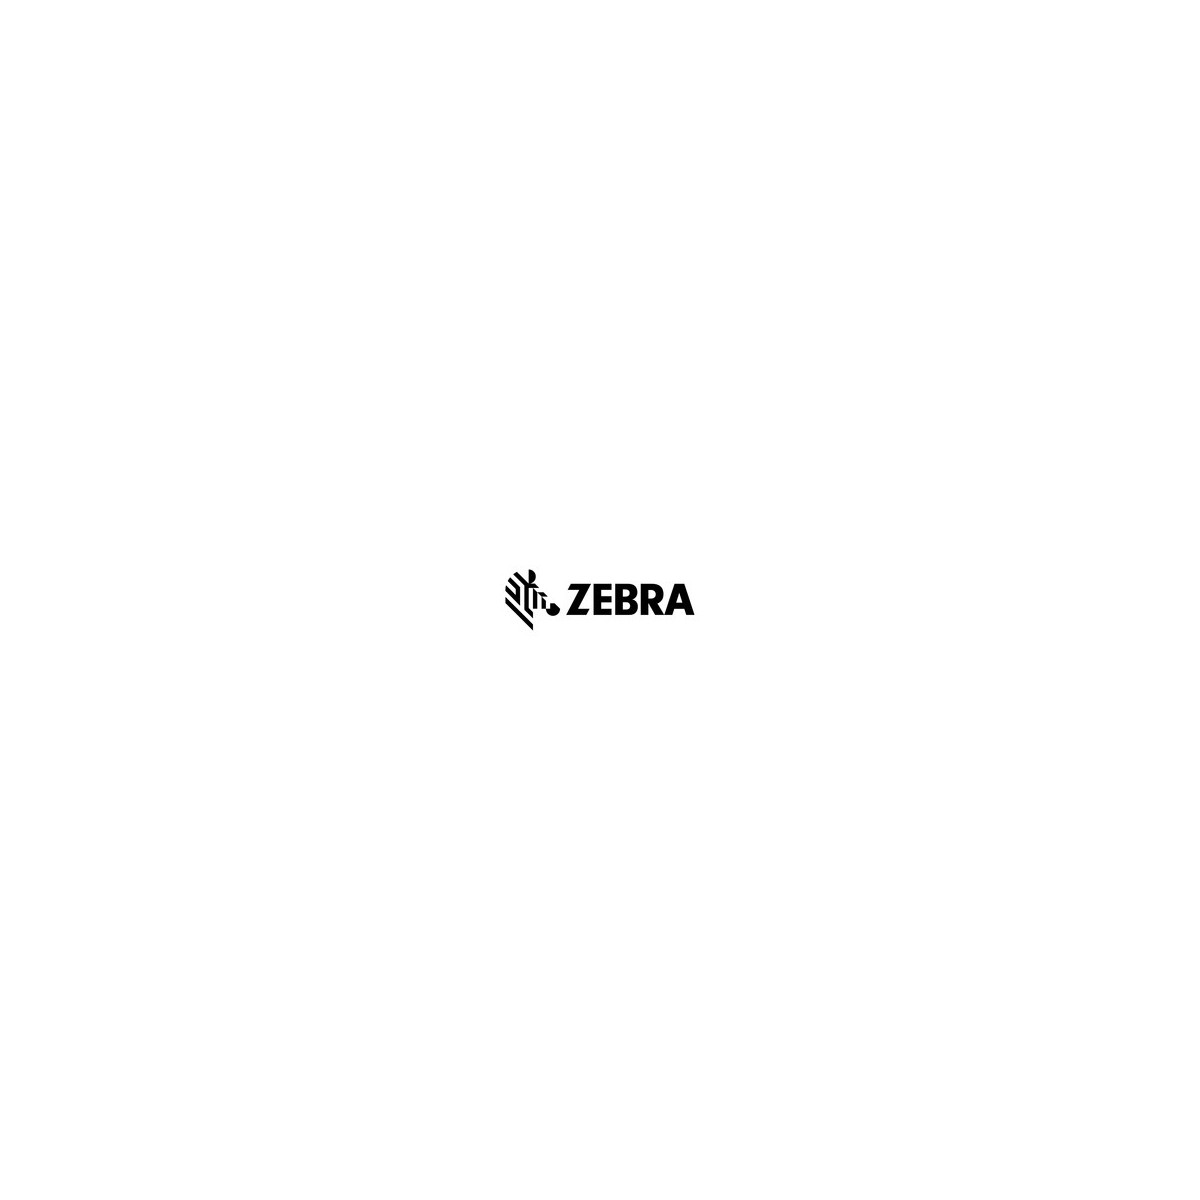 Zebra VisibilityIQ Foresight SERVICE